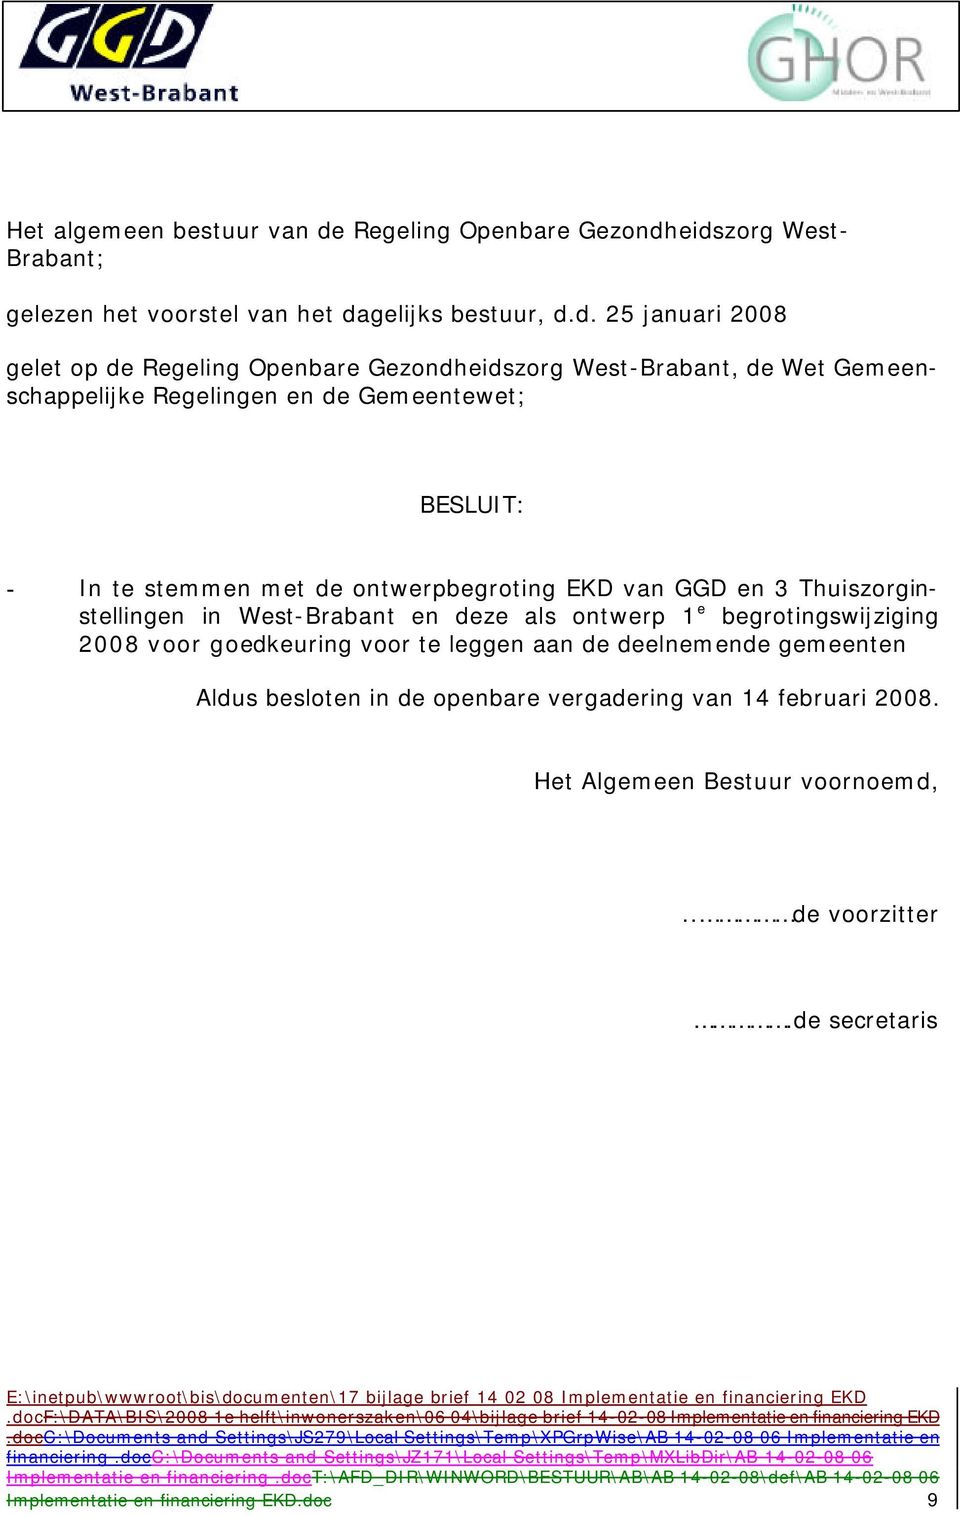 eidszorg West Brabant; gelezen het voorstel van het dagelijks bestuur, d.d. 25 januari 2008 gelet op de eidszorg WestBrabant, de Wet Gemeenschappelijke